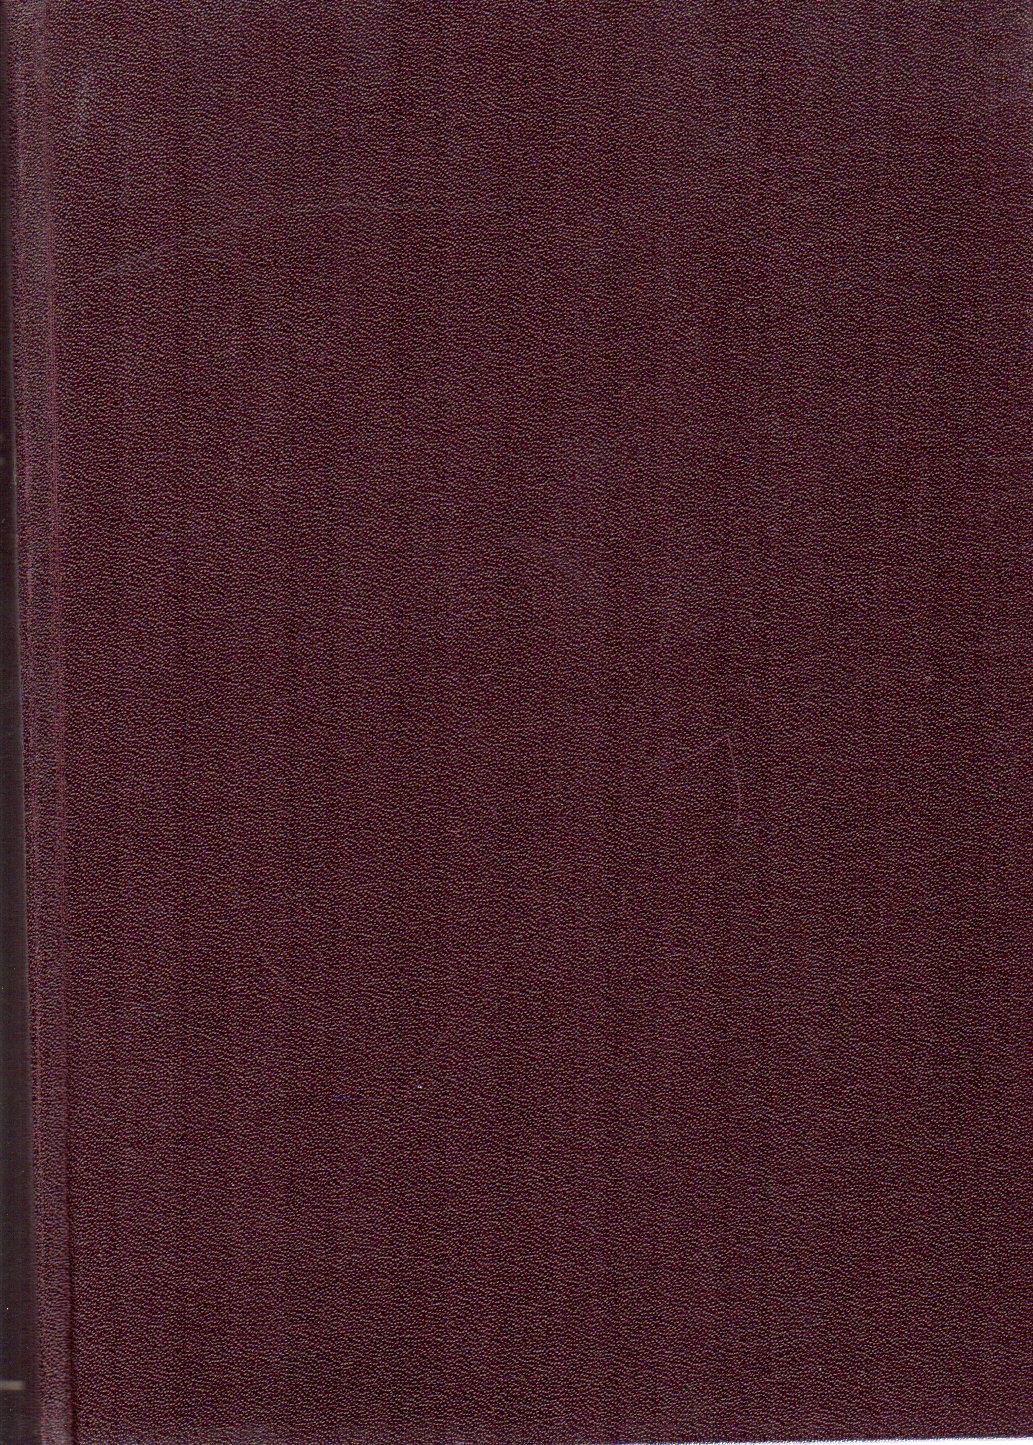 Geologisches Jahrbuch  Geologisches Jahrbuch Band 83.1965 